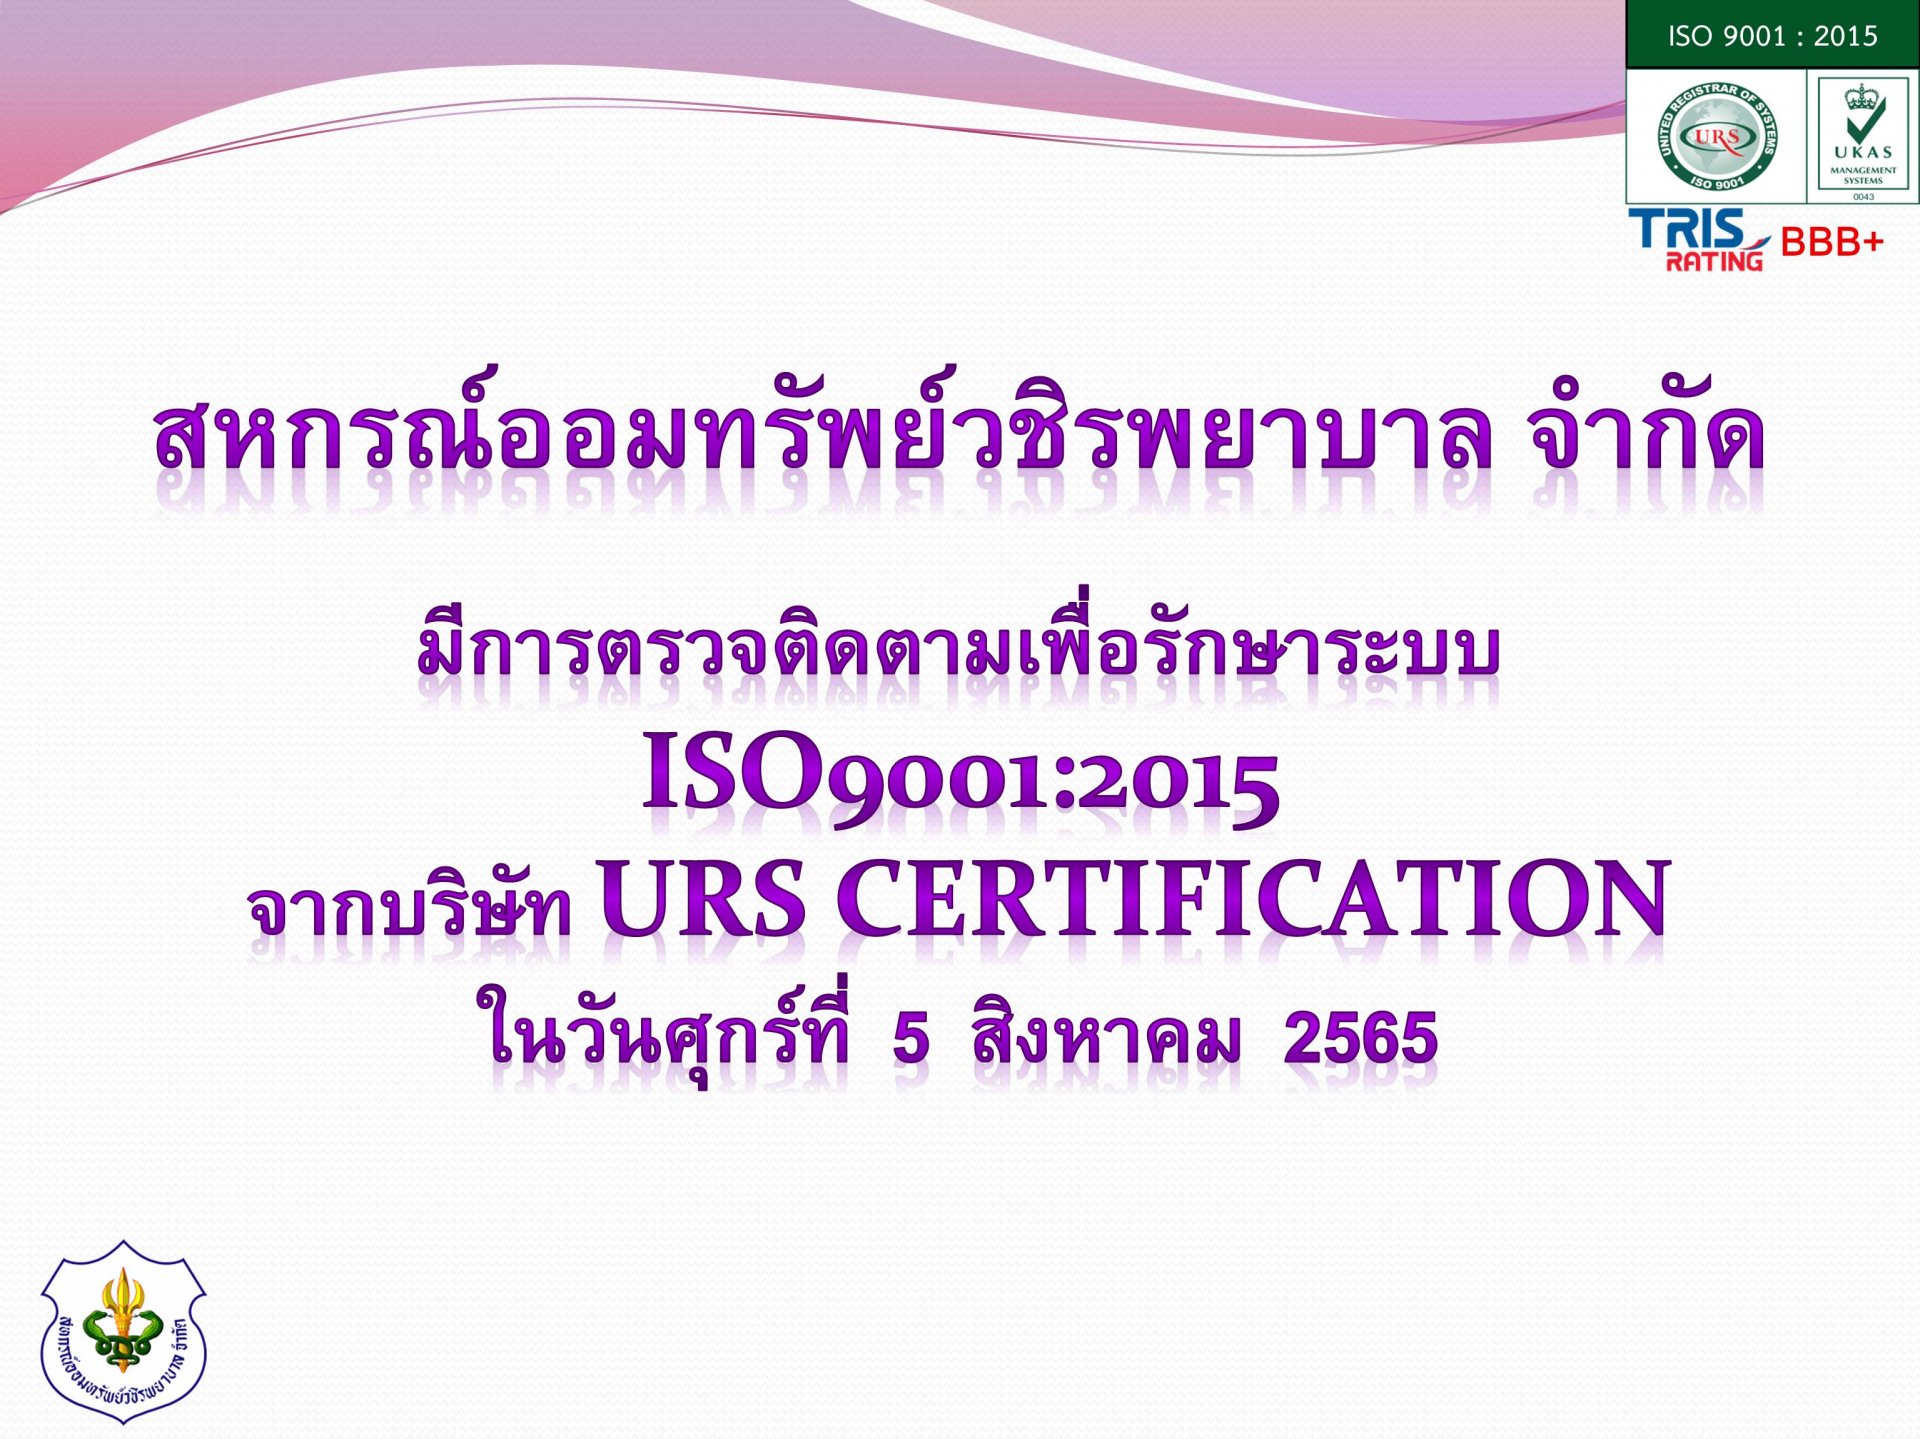 การตรวจติดตามเพื่อรักษาระบบISO 9001:2015